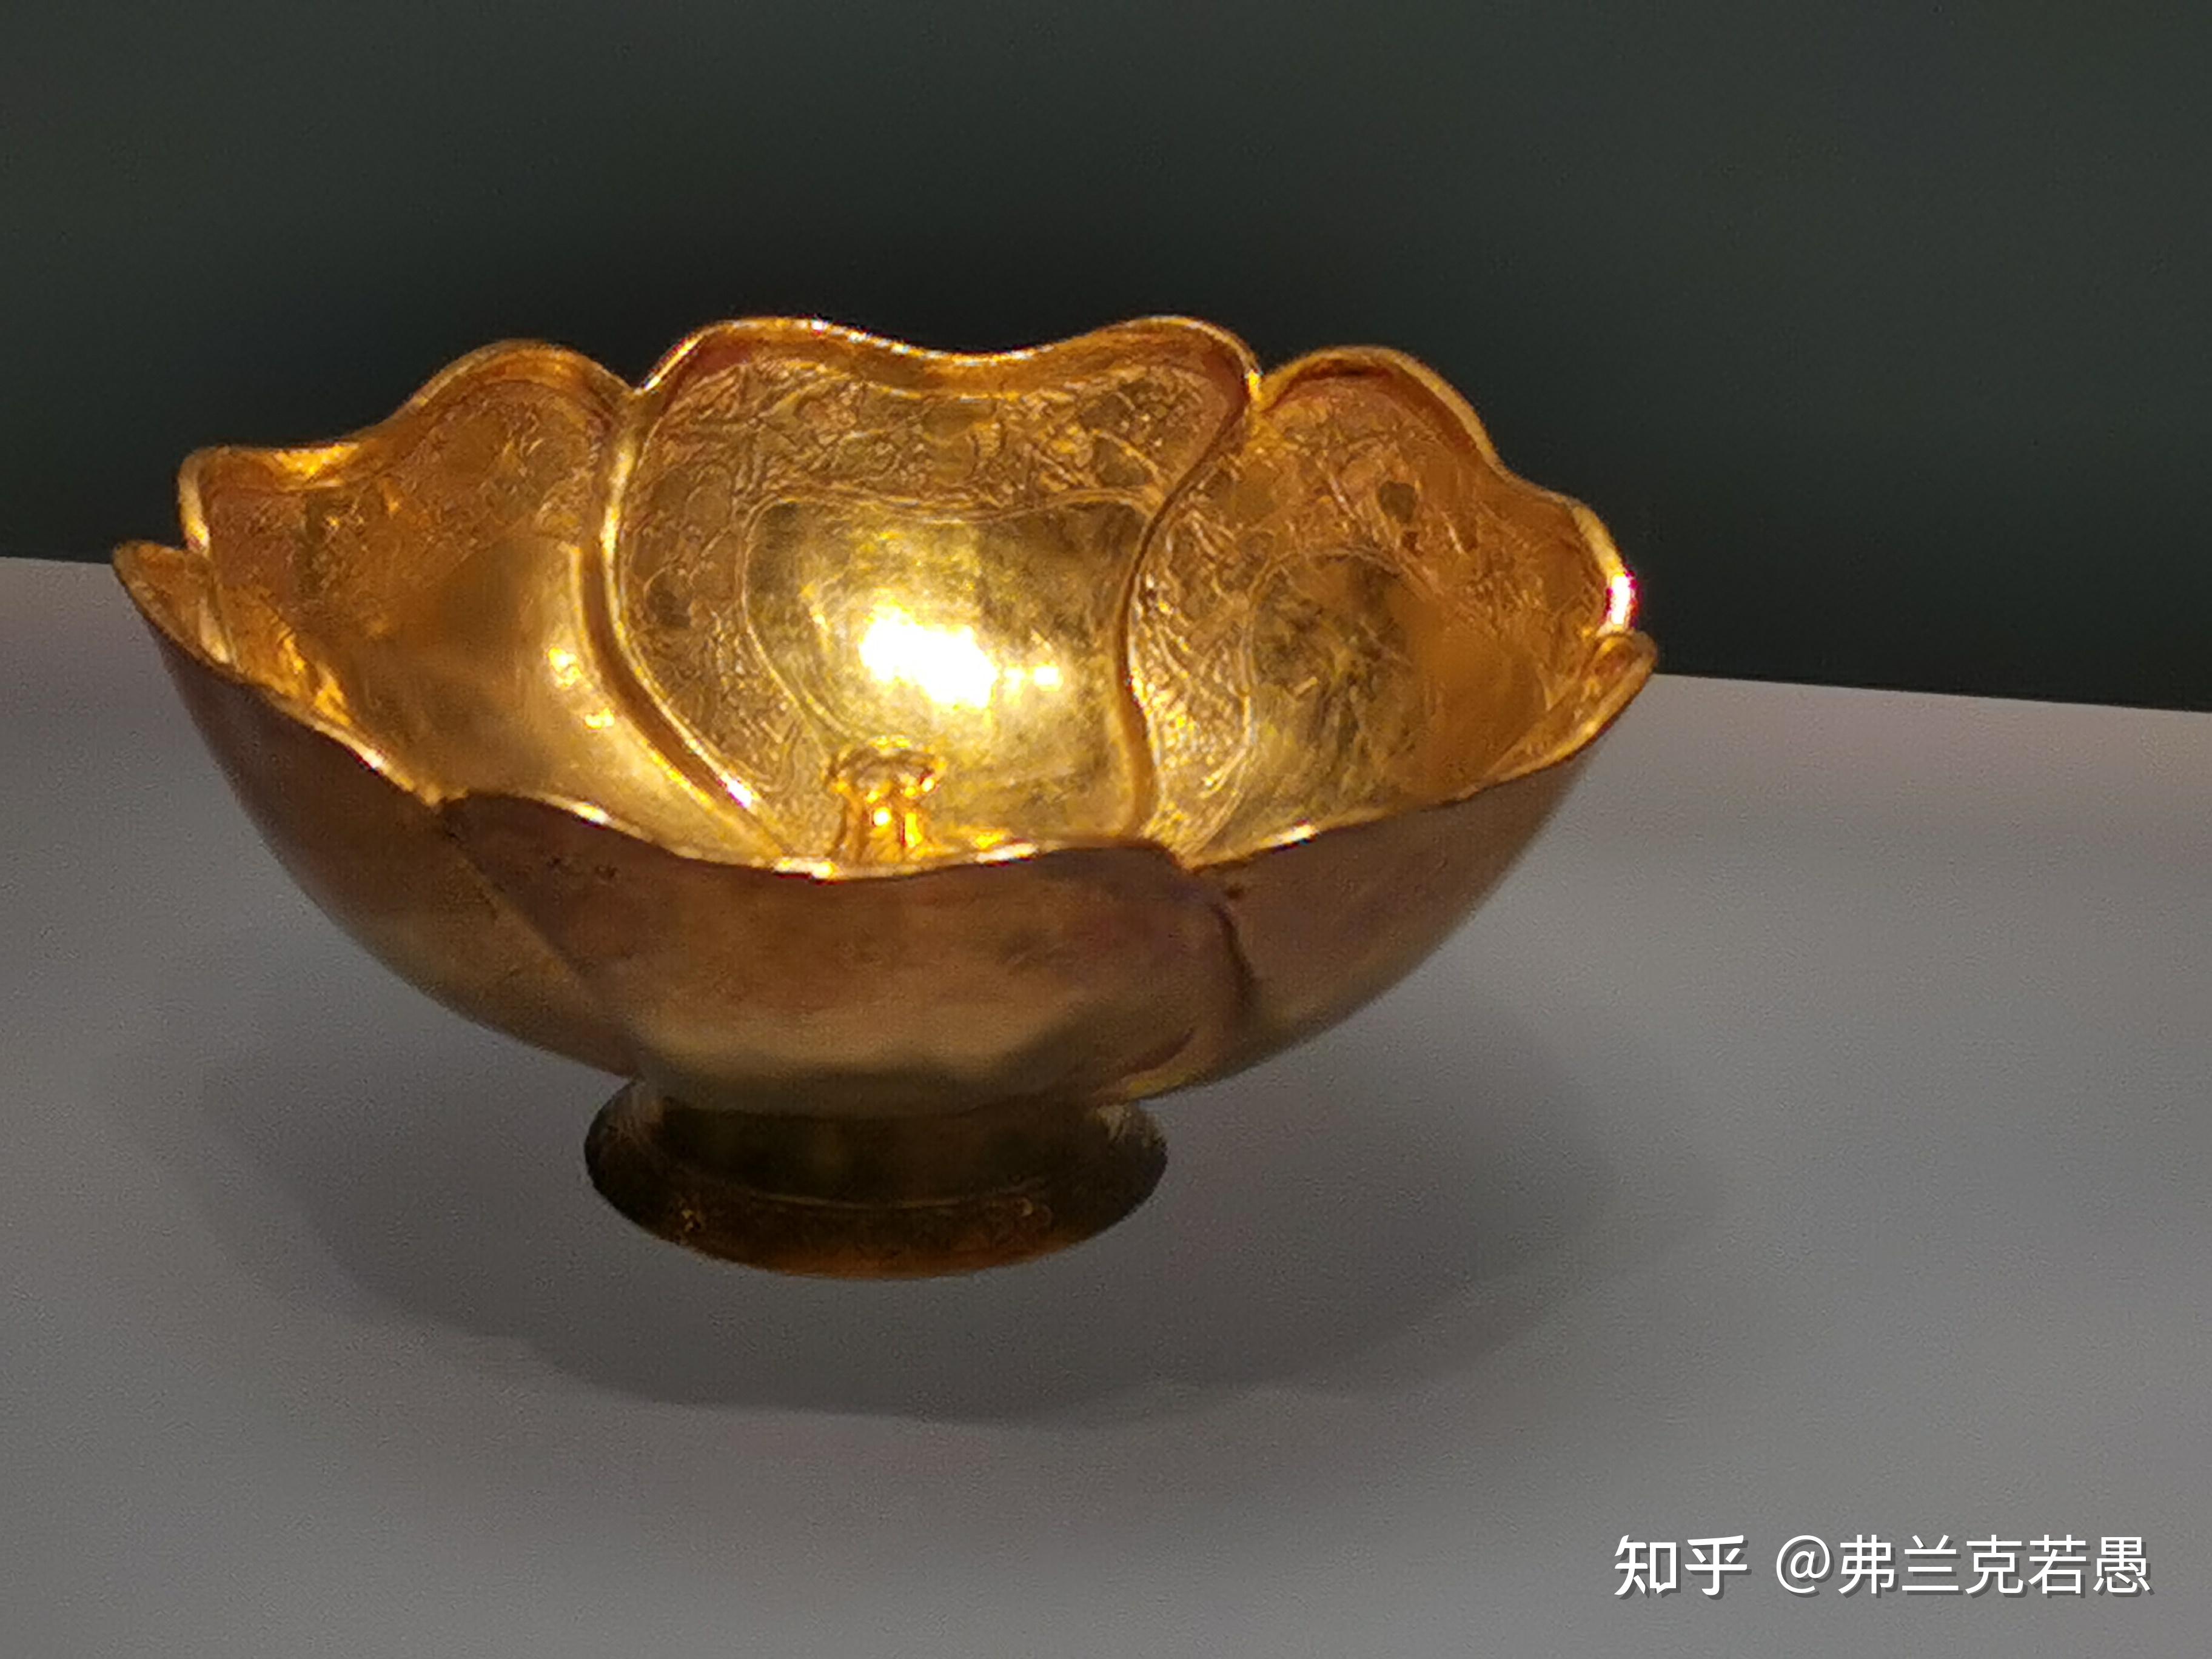 安徽省博物馆藏品中具有特色的文物有哪些? 